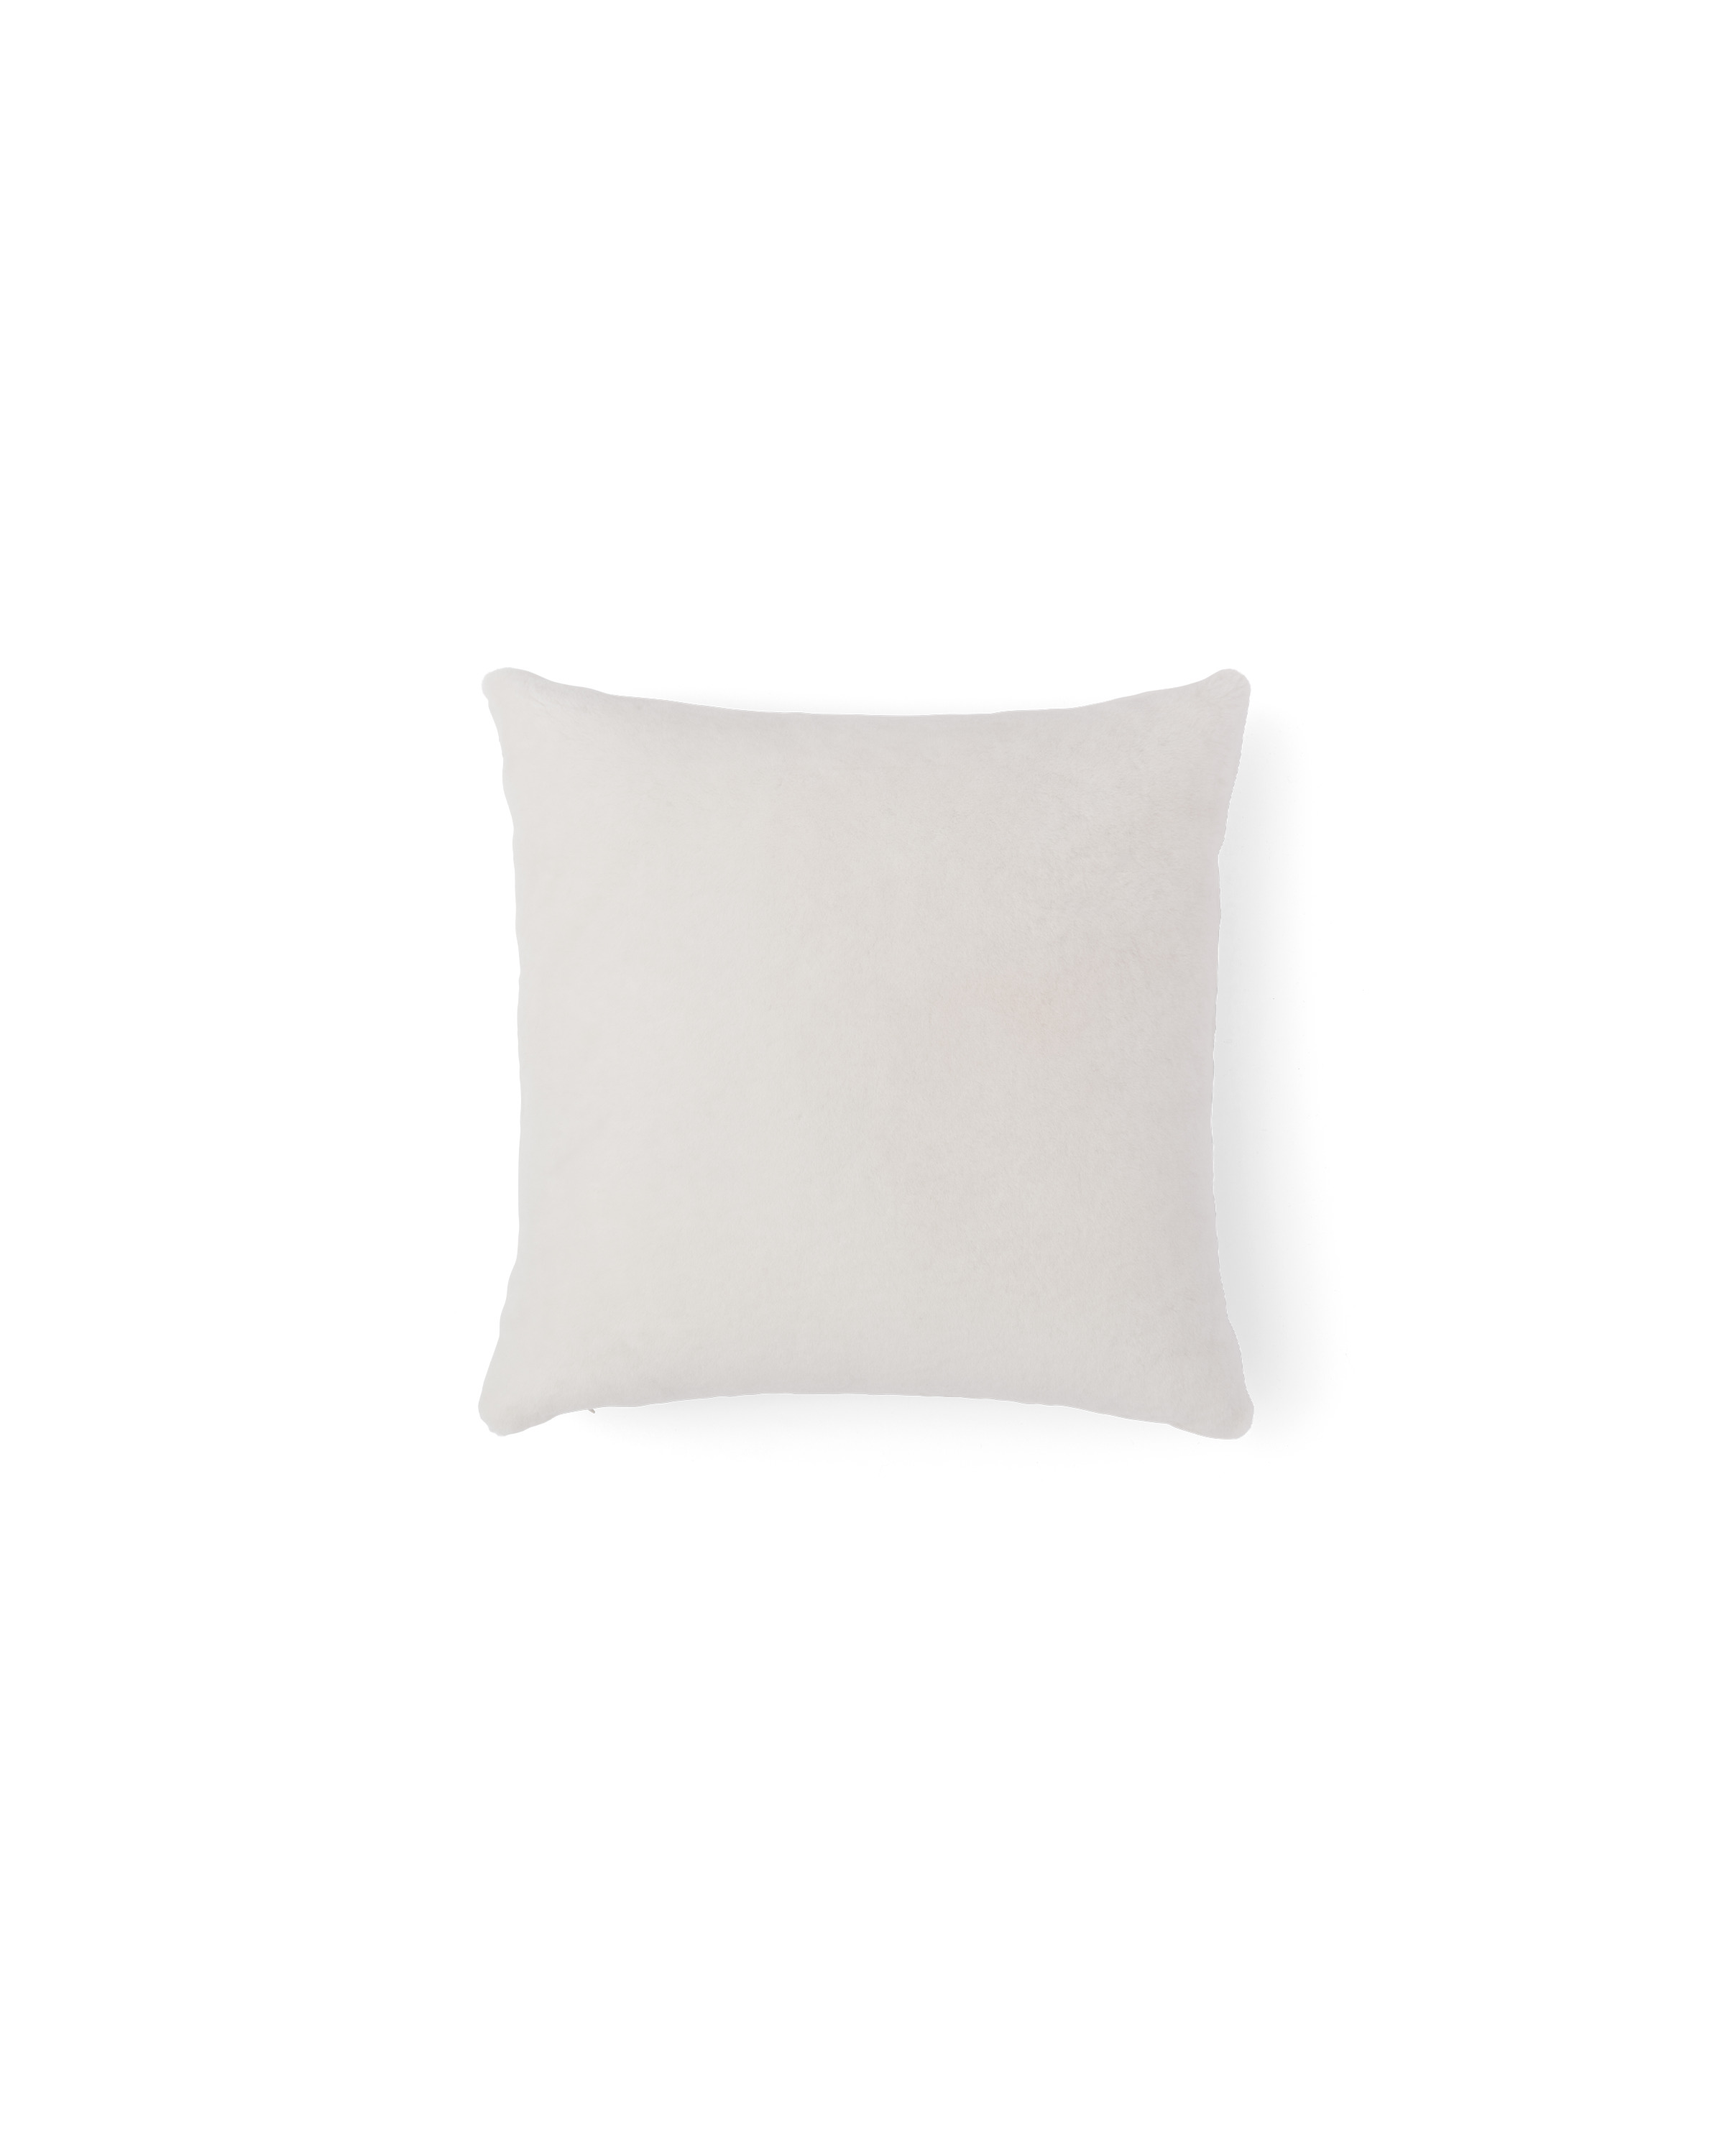 Sheepskin pillow - 3